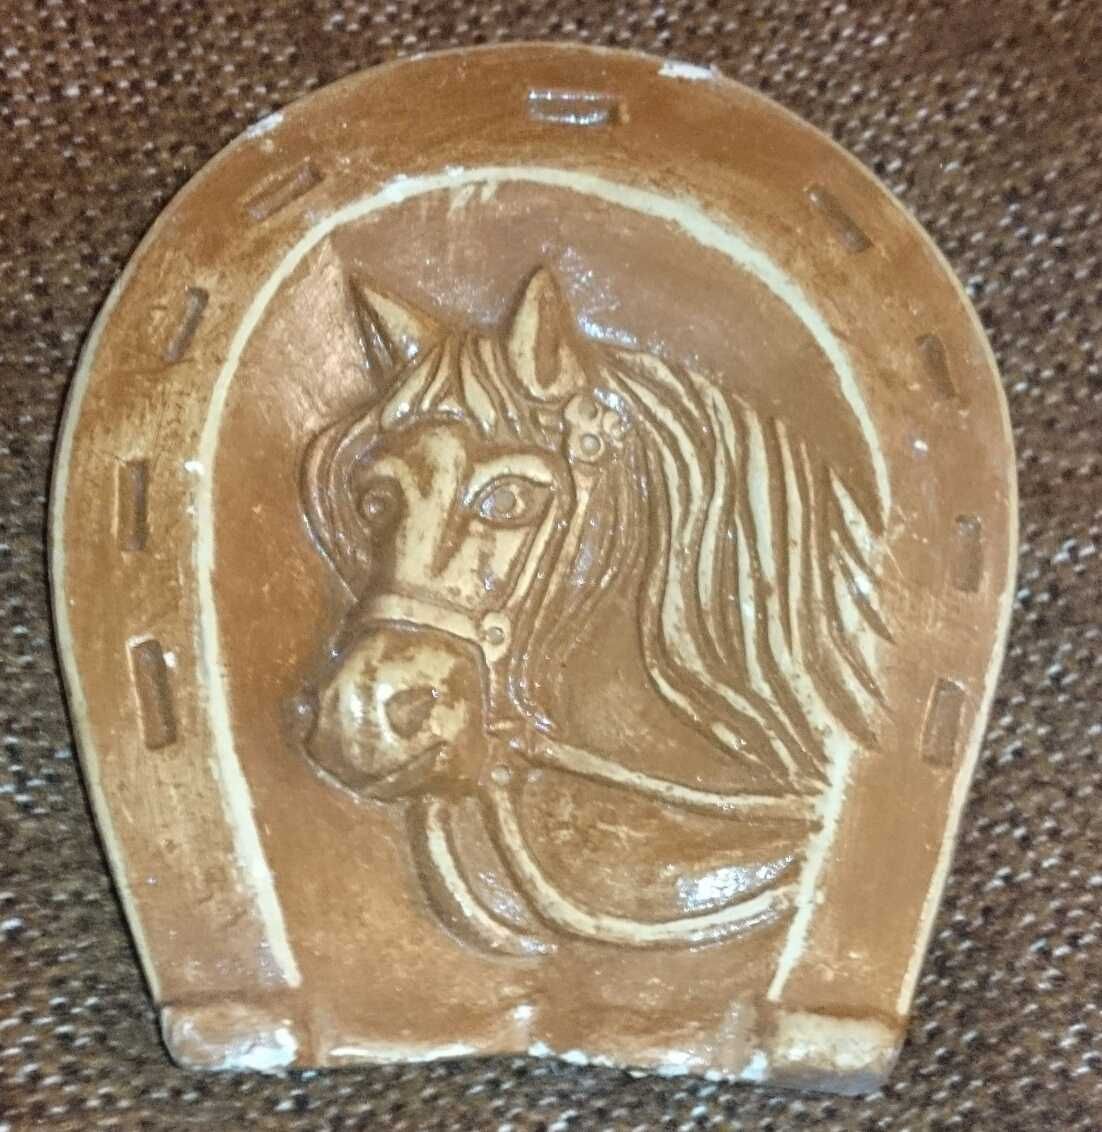 Podkowa obrazek na ściane kon, wizerunek konia na szczęście